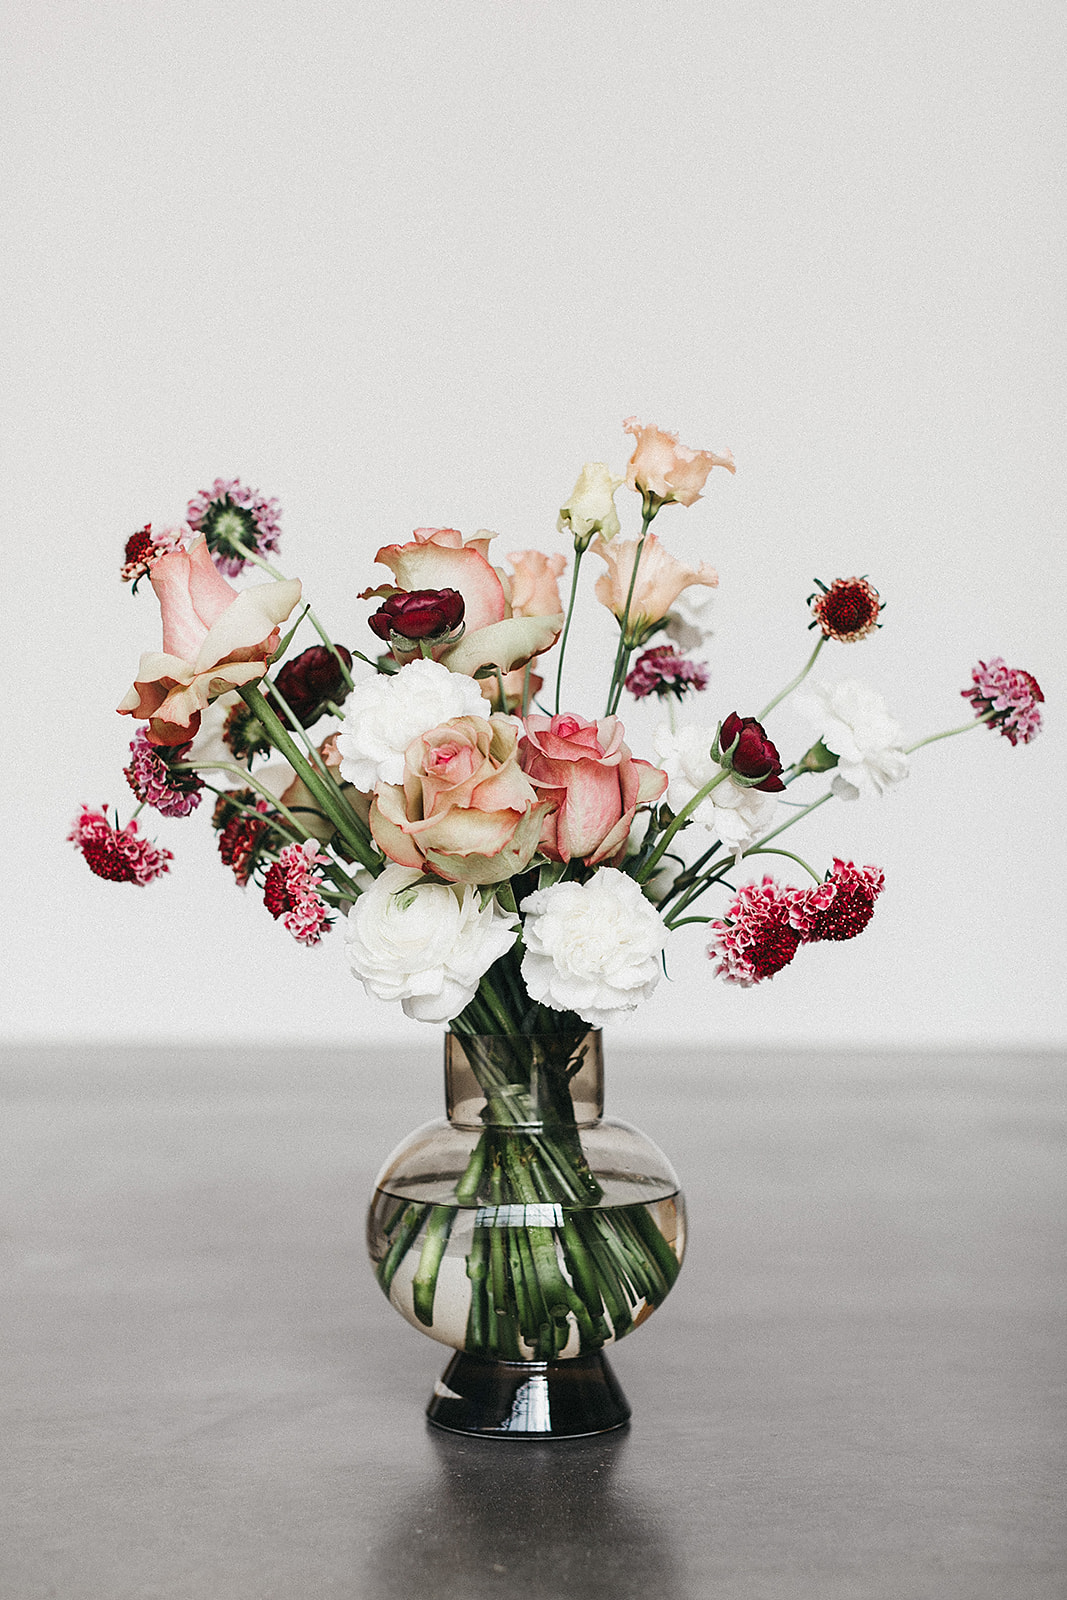 Vase GOLDREGEN floraldesign – 1